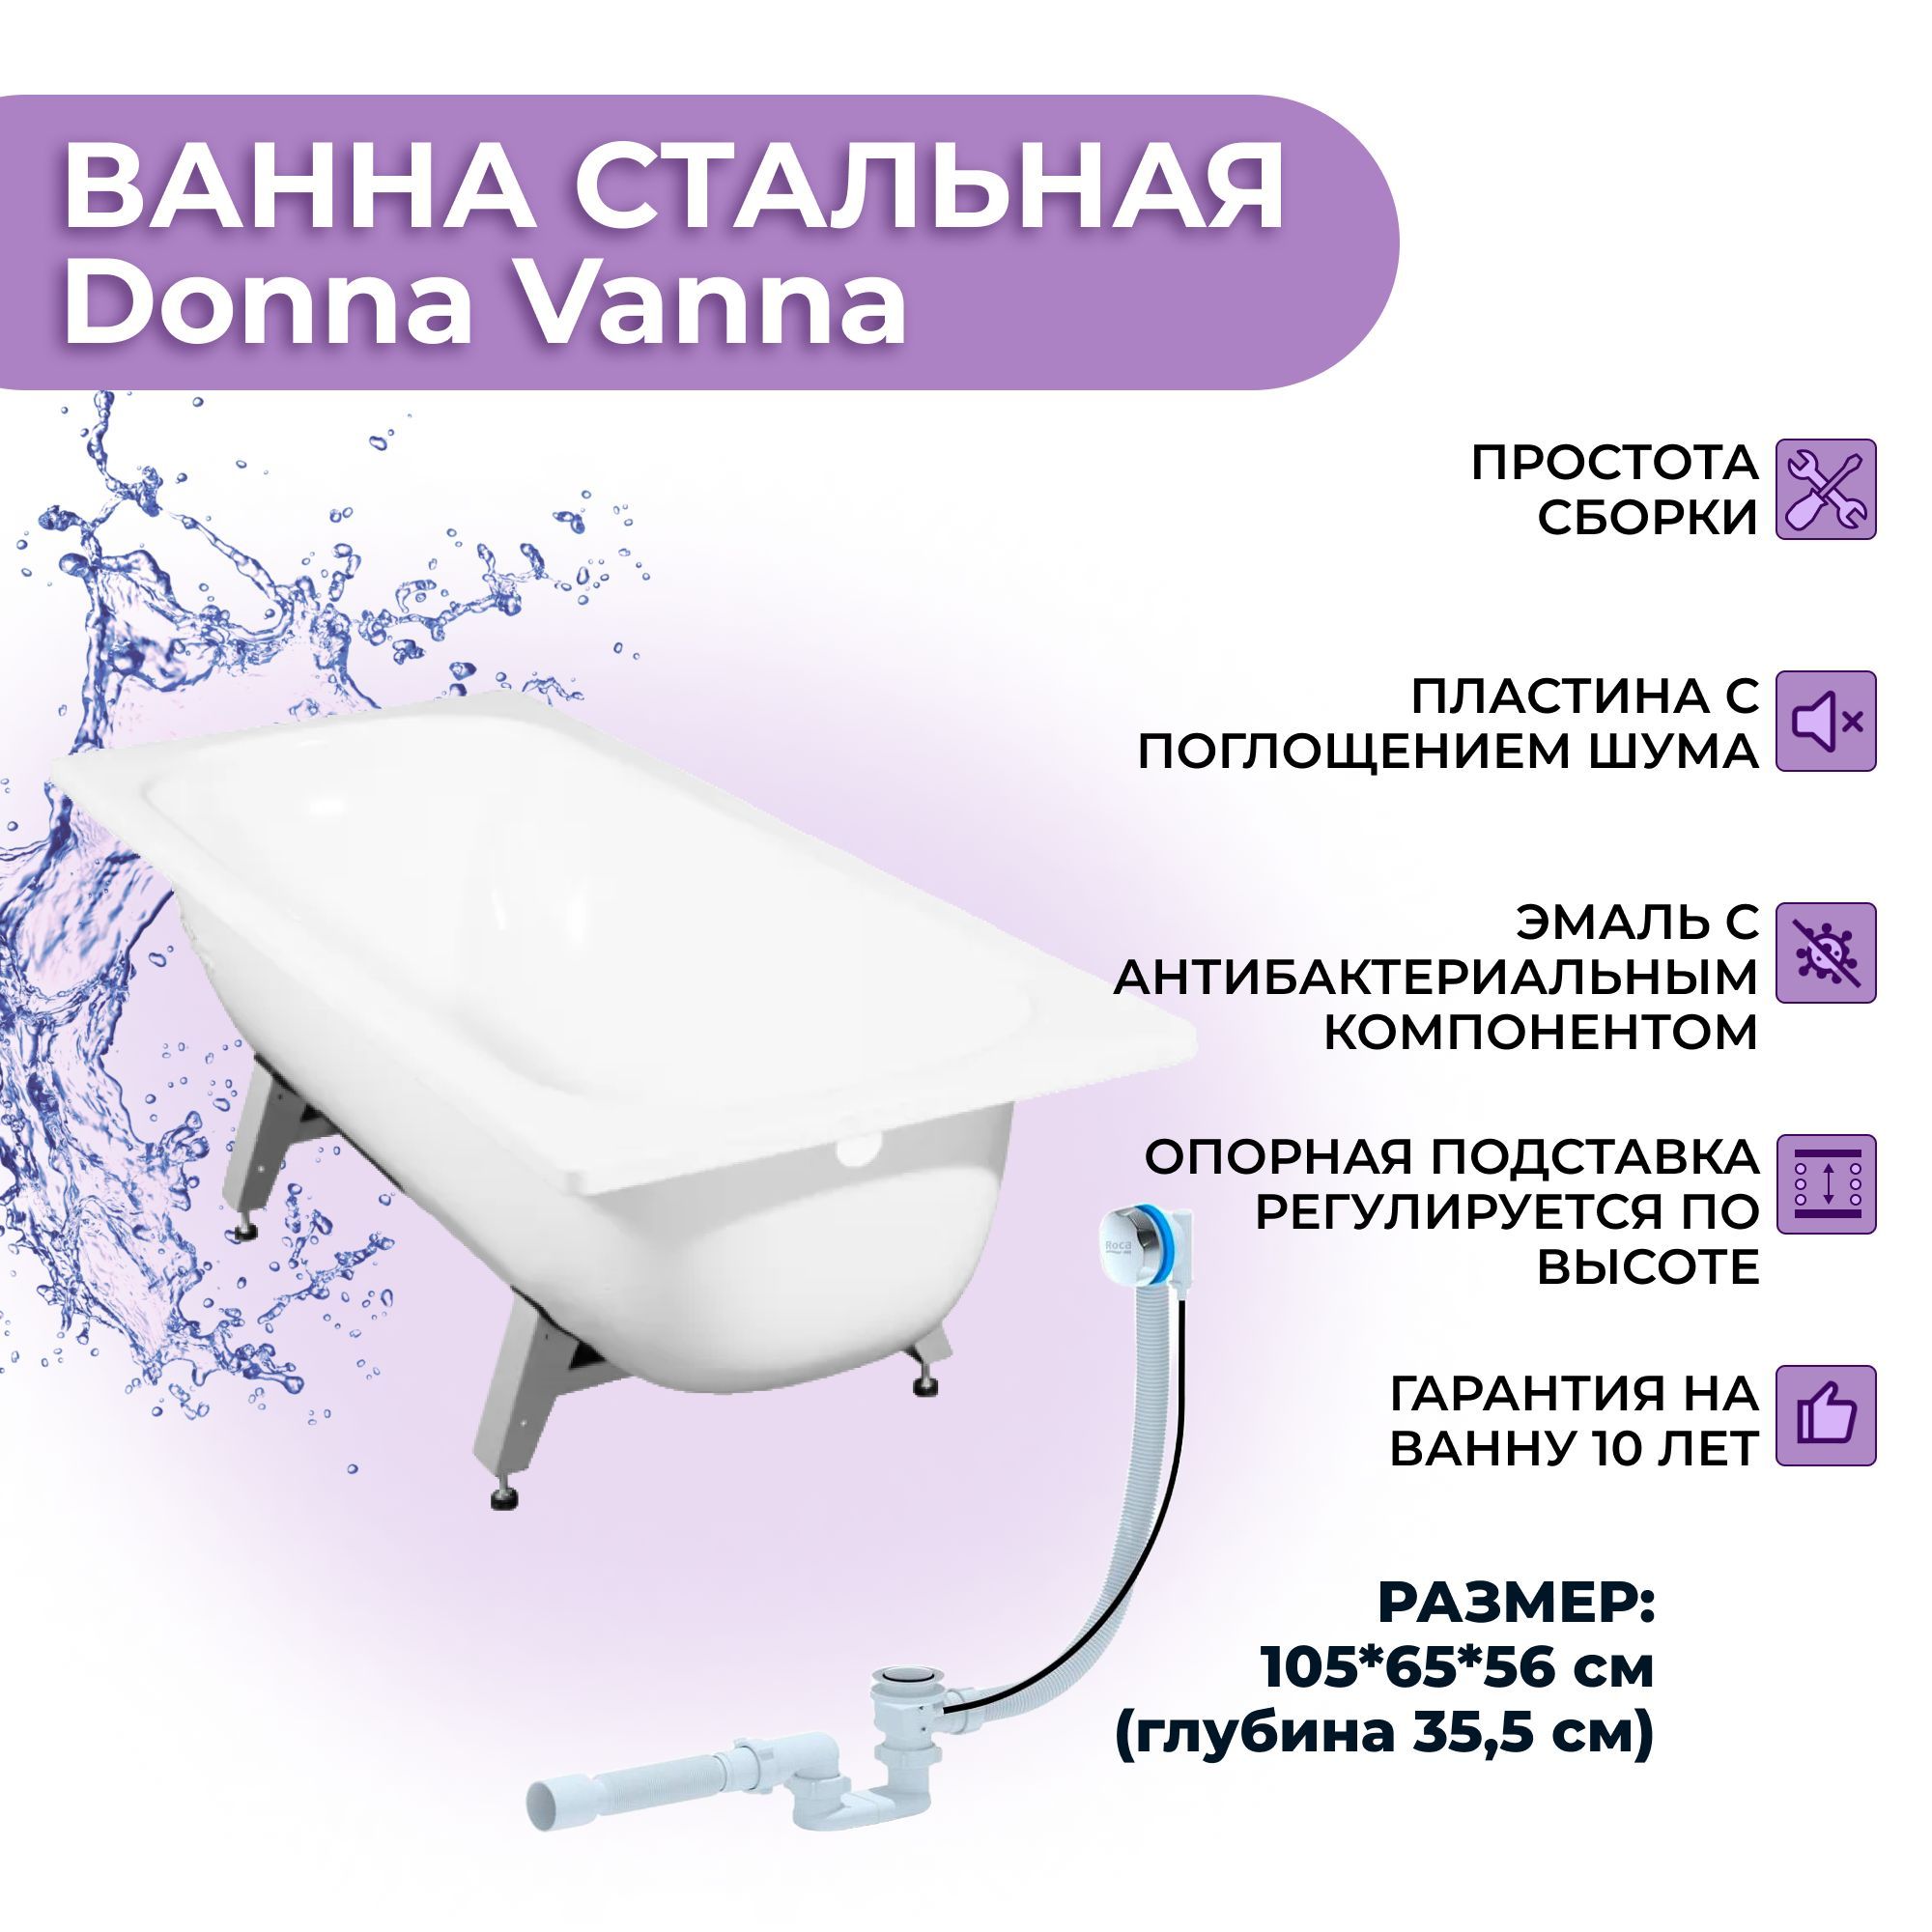 Виз donna vanna. Donna Vanna на каркасе. Габариты ванны Donna Vanna. Стальная ванна виз 120 см. Опорная подставка для ванны виз инструкция.